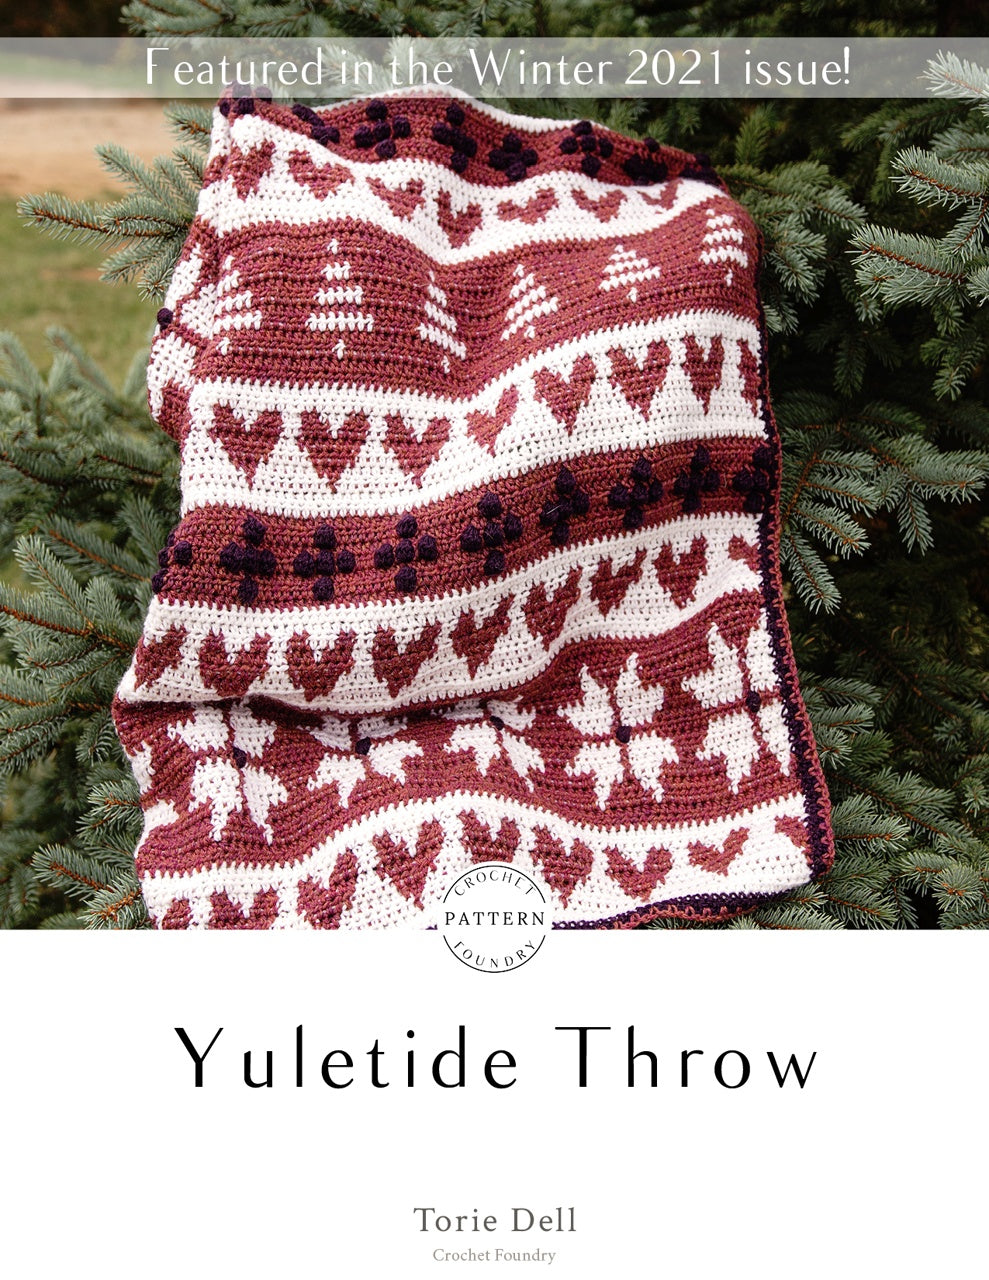 Yuletide Throw Crochet PDF Pattern by Torie Dell